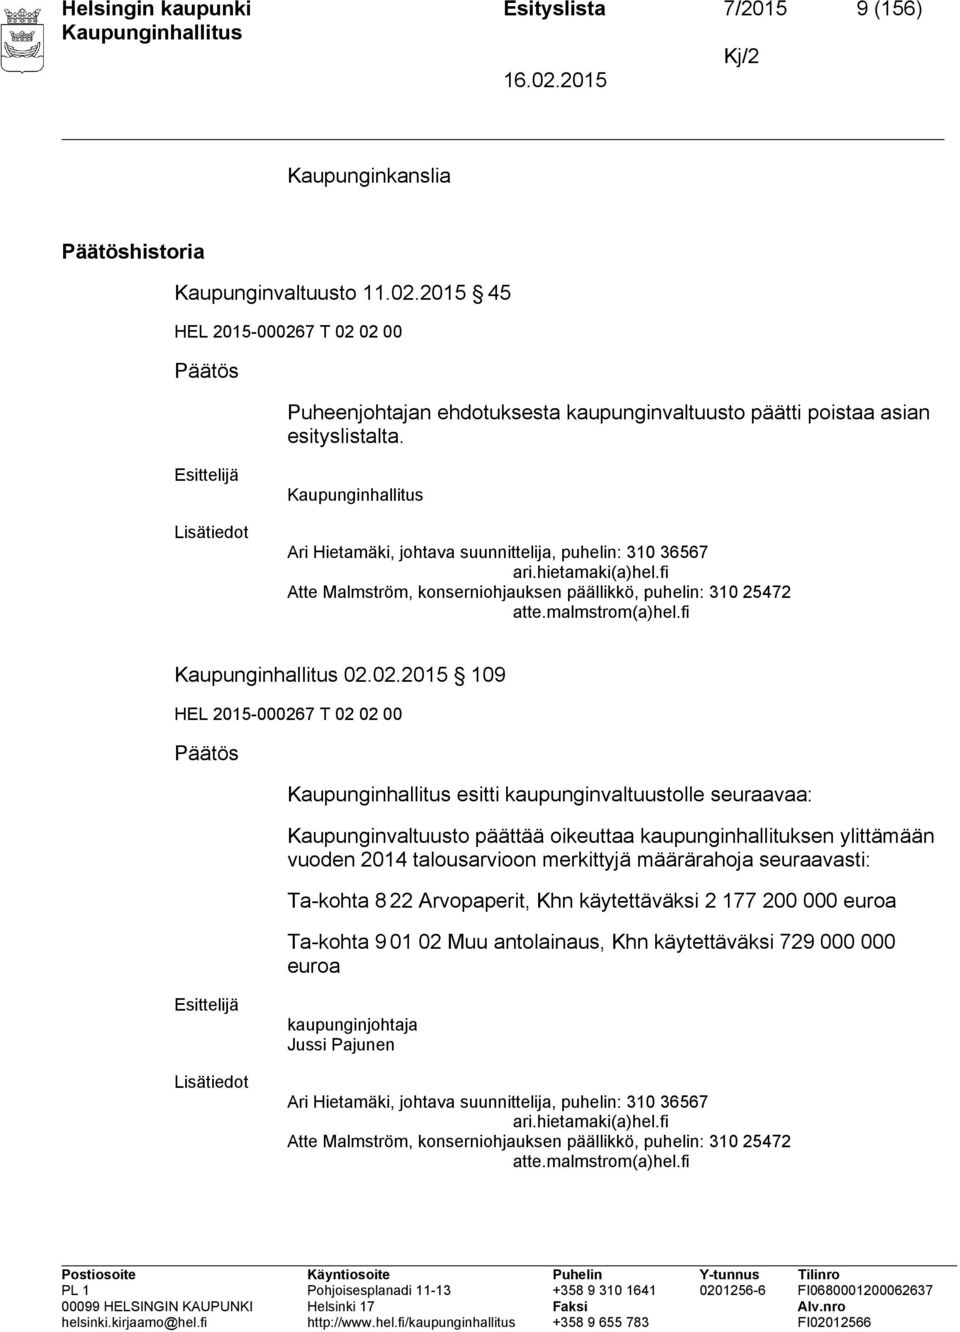 Esittelijä Lisätiedot Ari Hietamäki, johtava suunnittelija, puhelin: 310 36567 ari.hietamaki(a)hel.fi Atte Malmström, konserniohjauksen päällikkö, puhelin: 310 25472 atte.malmstrom(a)hel.fi 02.